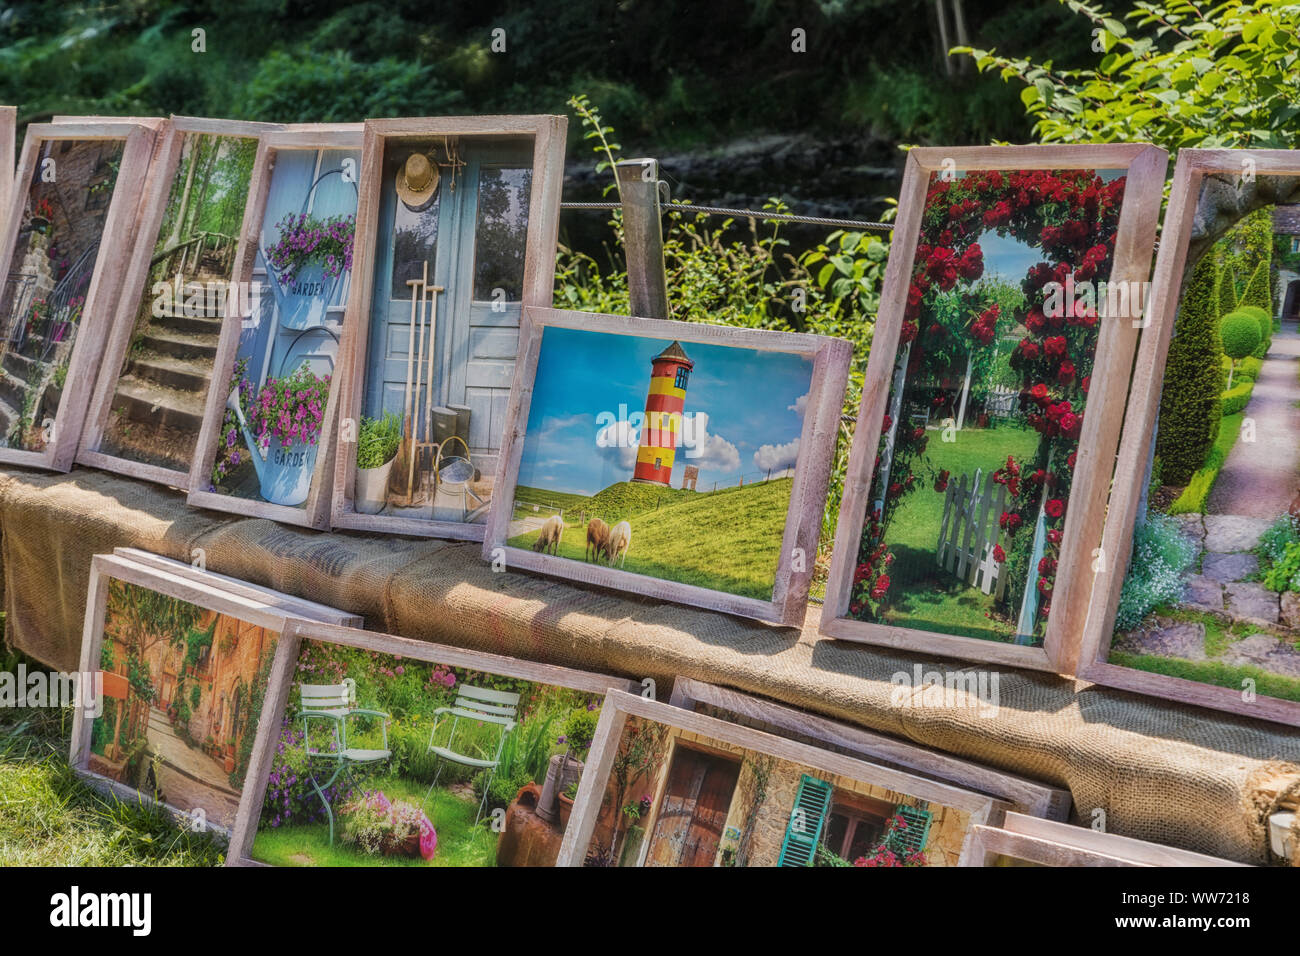 Engelskirchen, Allemagne - 30 juin 2019 : Photos vente sur un marché dans le jardin Engelskirchen - Allemagne Banque D'Images